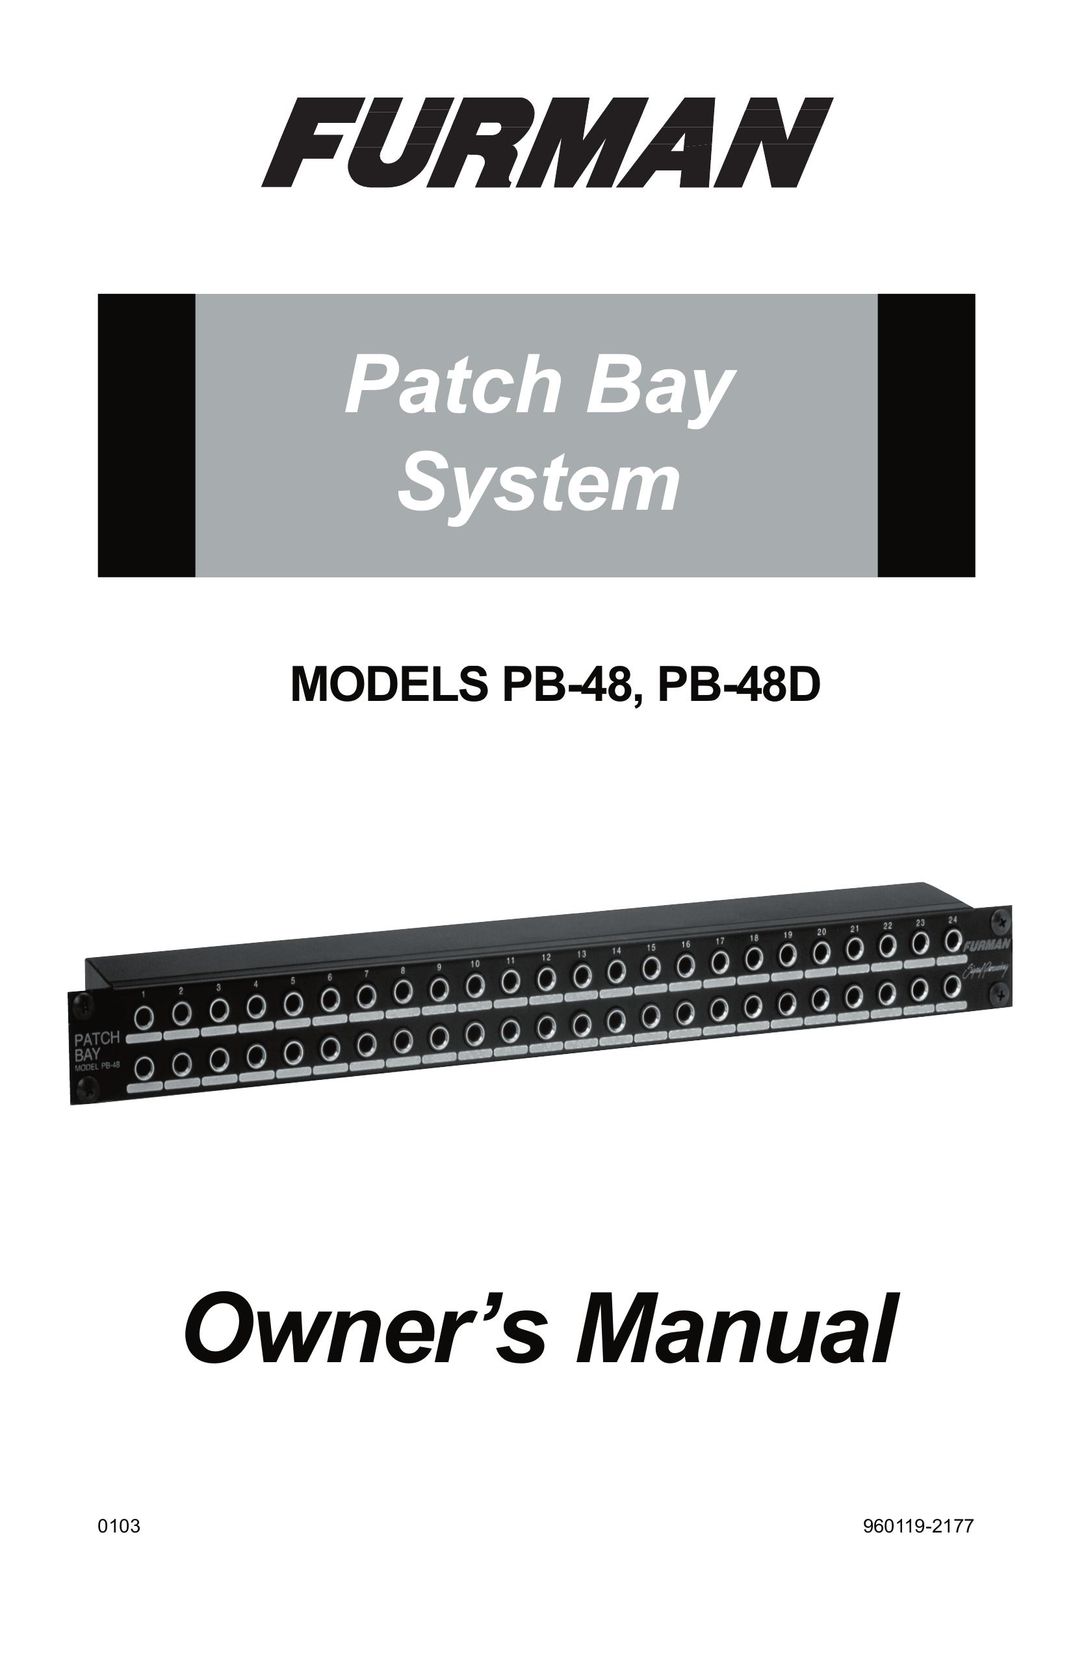 Furman Sound PB-48D Network Card User Manual